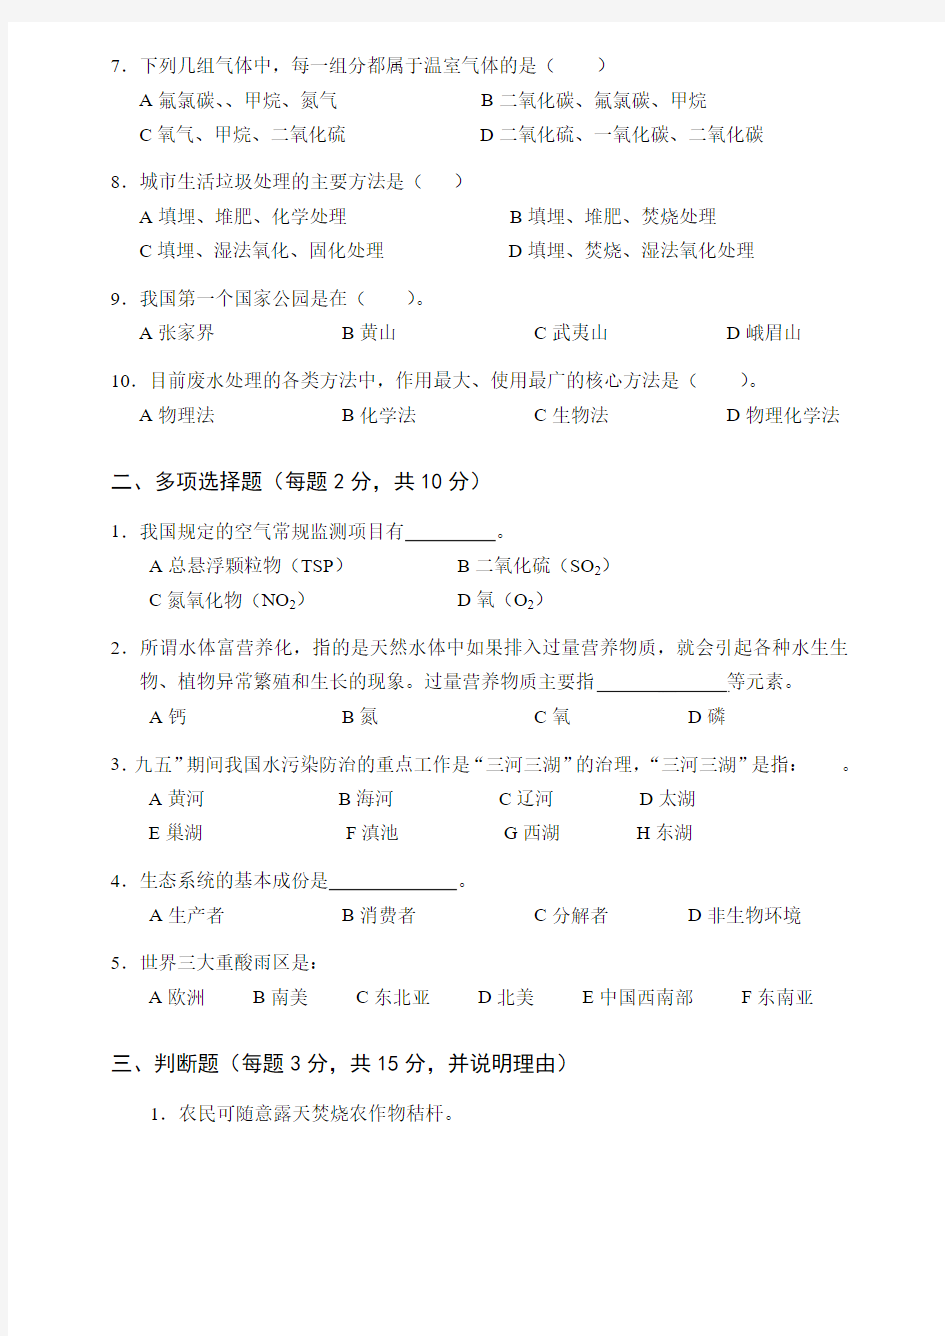 环境生态学导论_刘国云_湖南大学环境生态学课程考试试卷